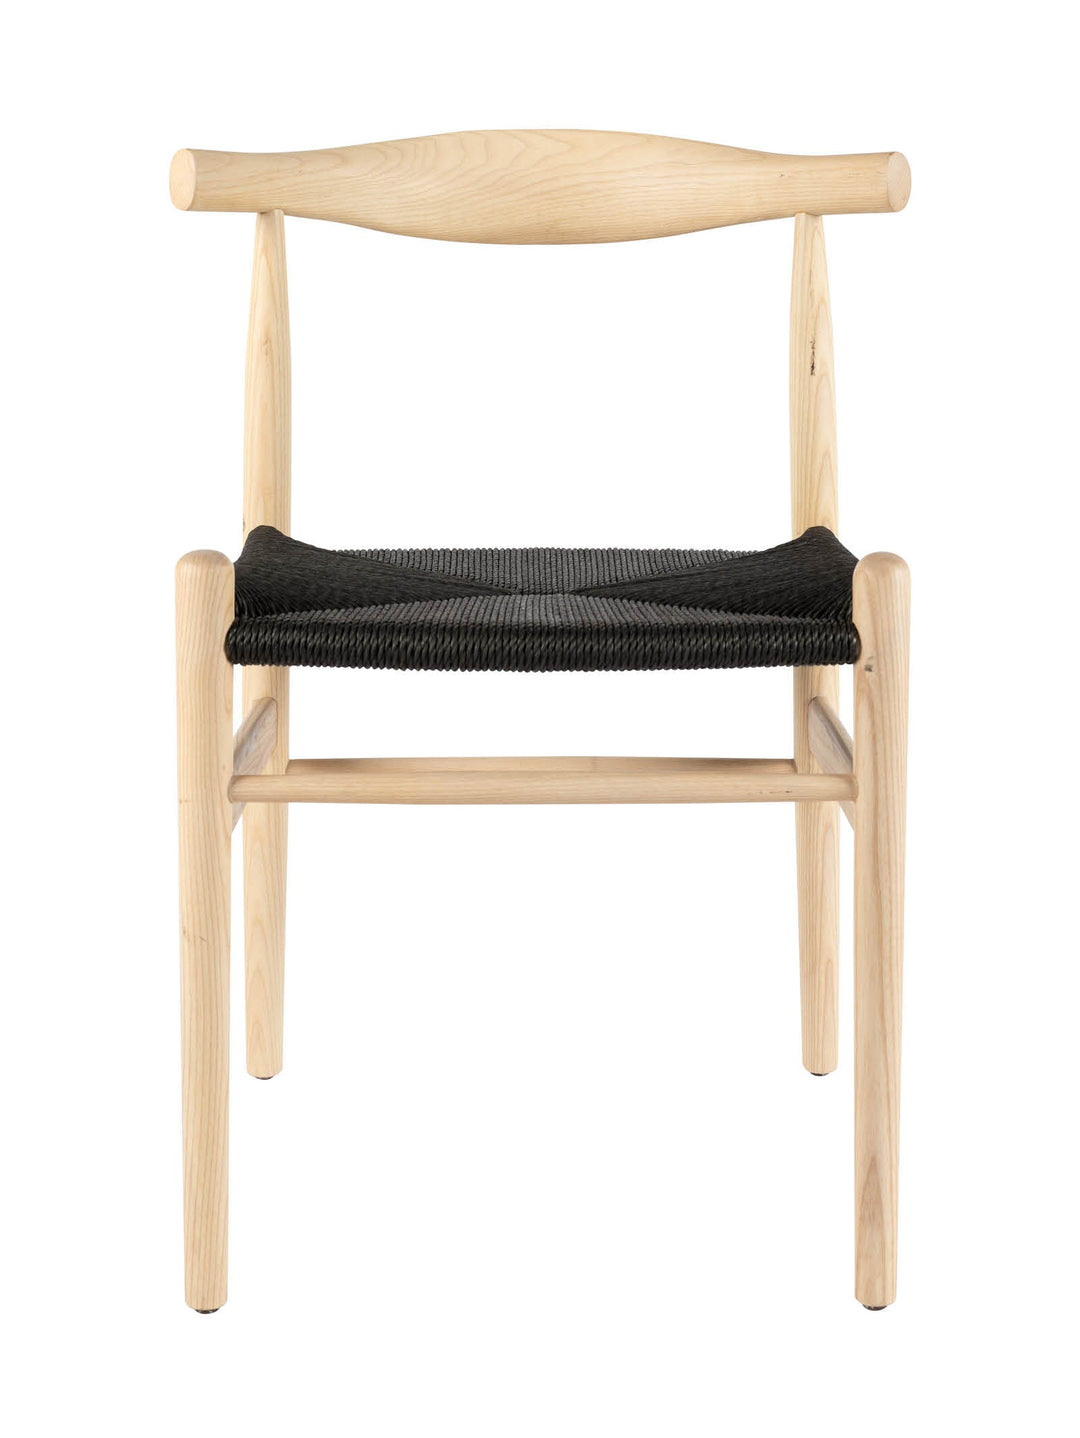 William Dining Chair - Hertex Haus Online - Furniture